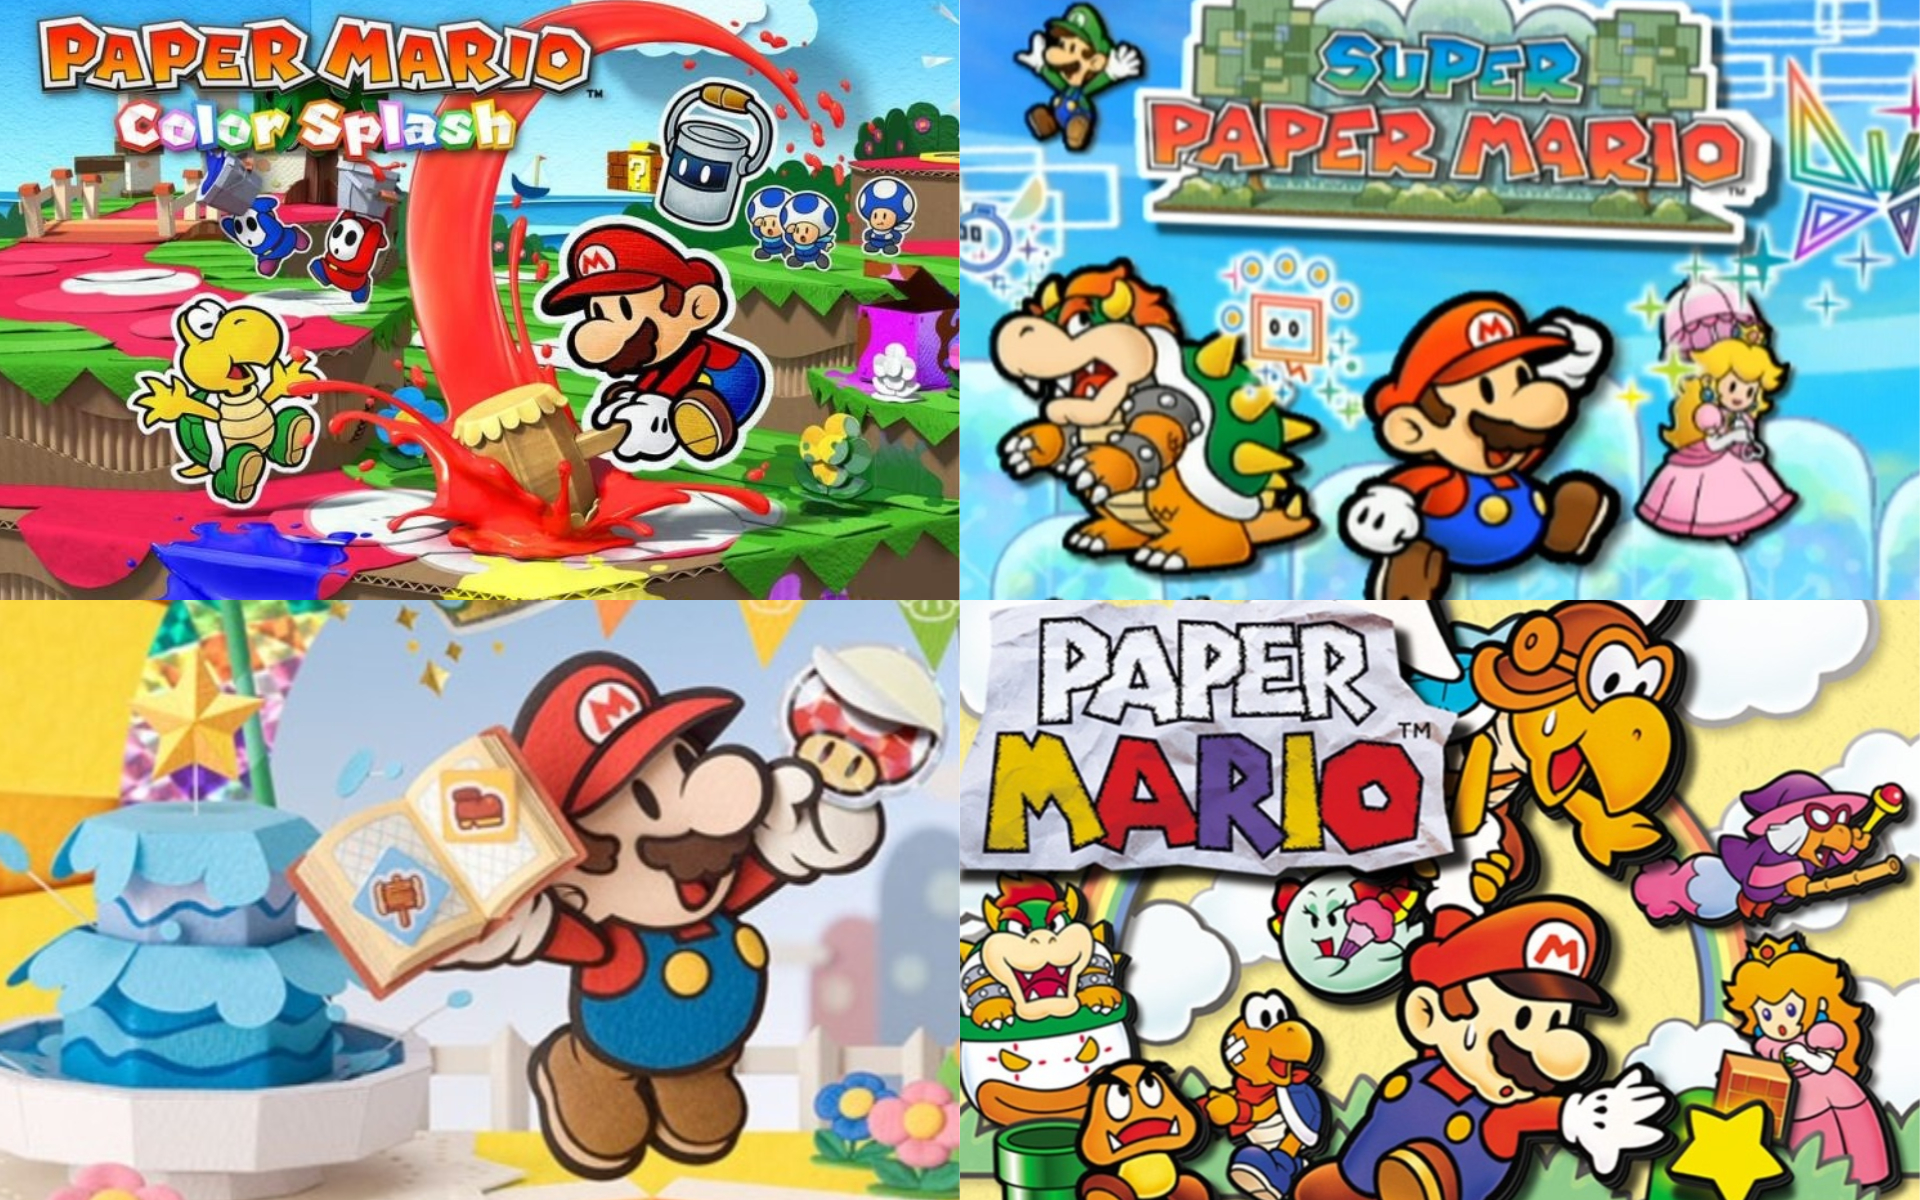 Refinar Tratado En honor Top de juegos de Paper Mario, según la calidad del papel